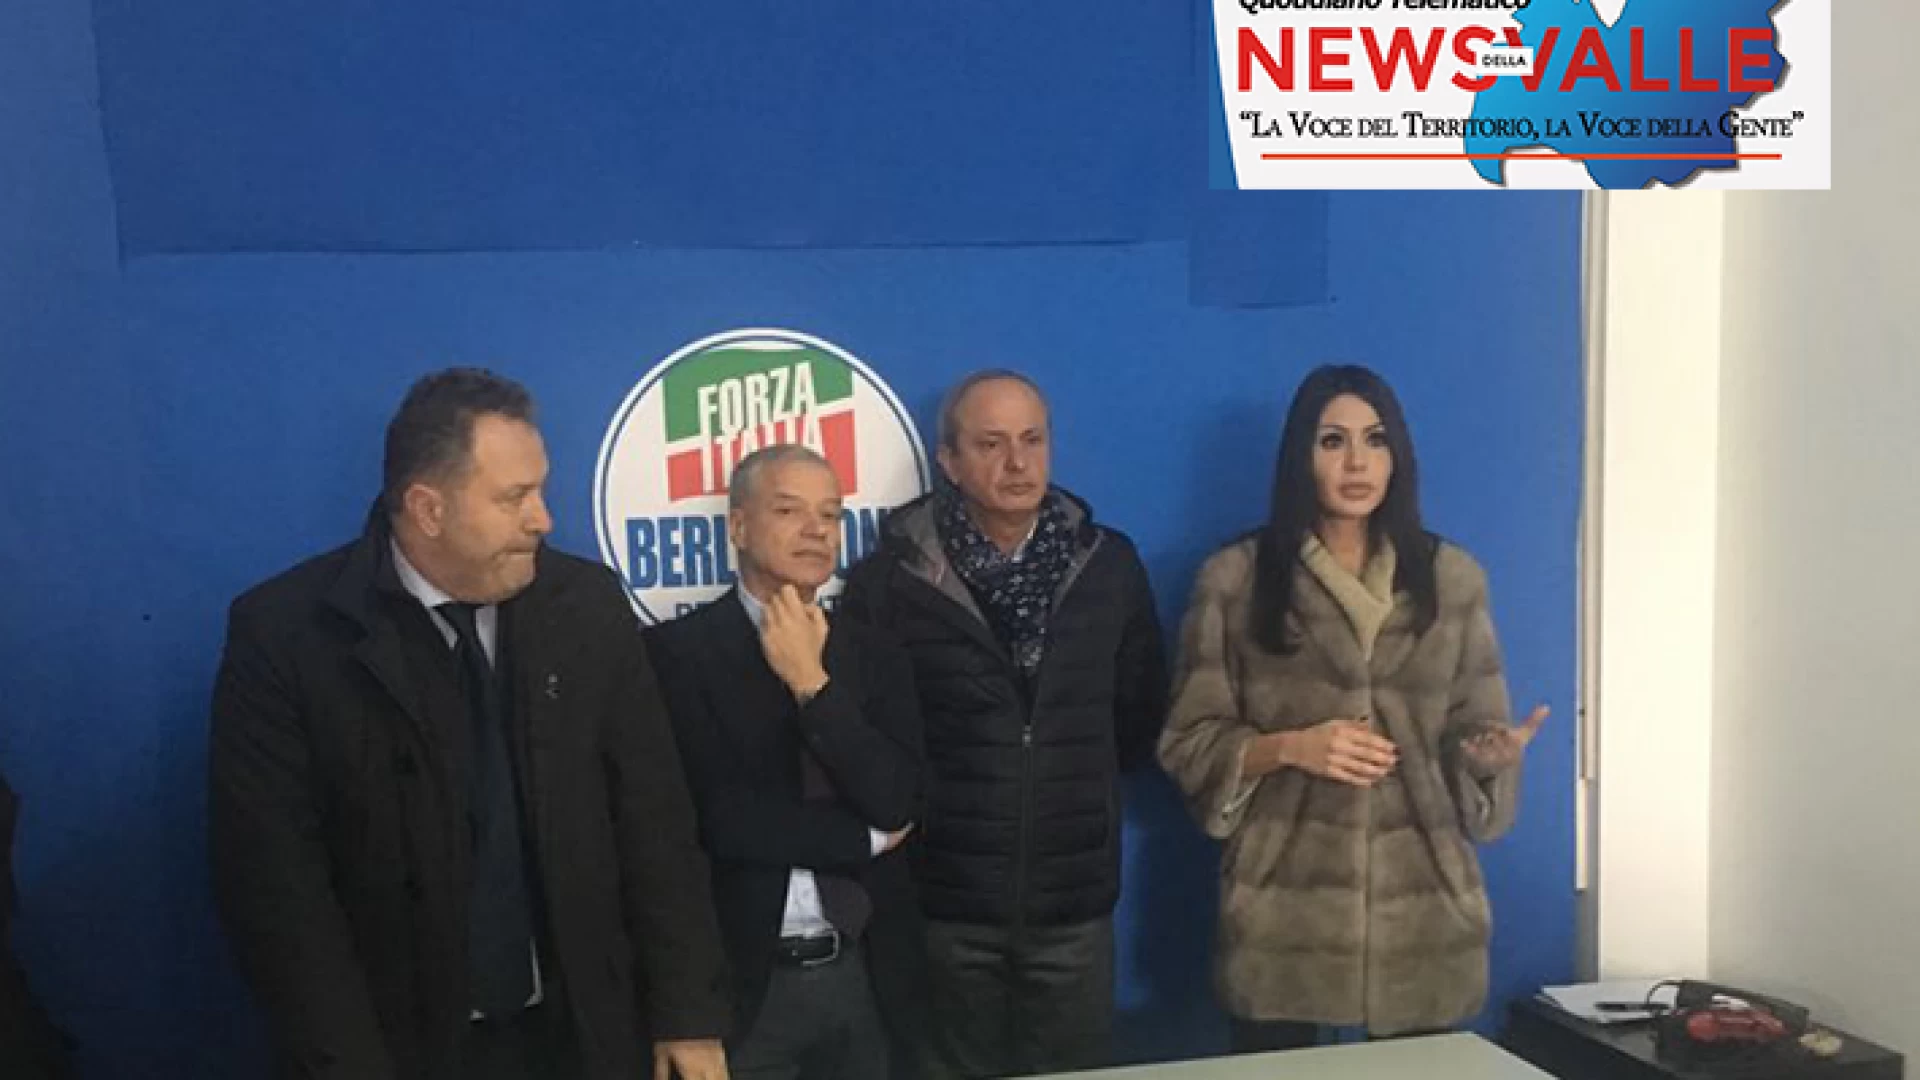 Elezioni politiche: Forza Italia inaugura la sede ad Isernia. I quattro candidati a Camera e Senato annunciano l'unione nazionale e l'impegno massimo per conquistare la vittoria.